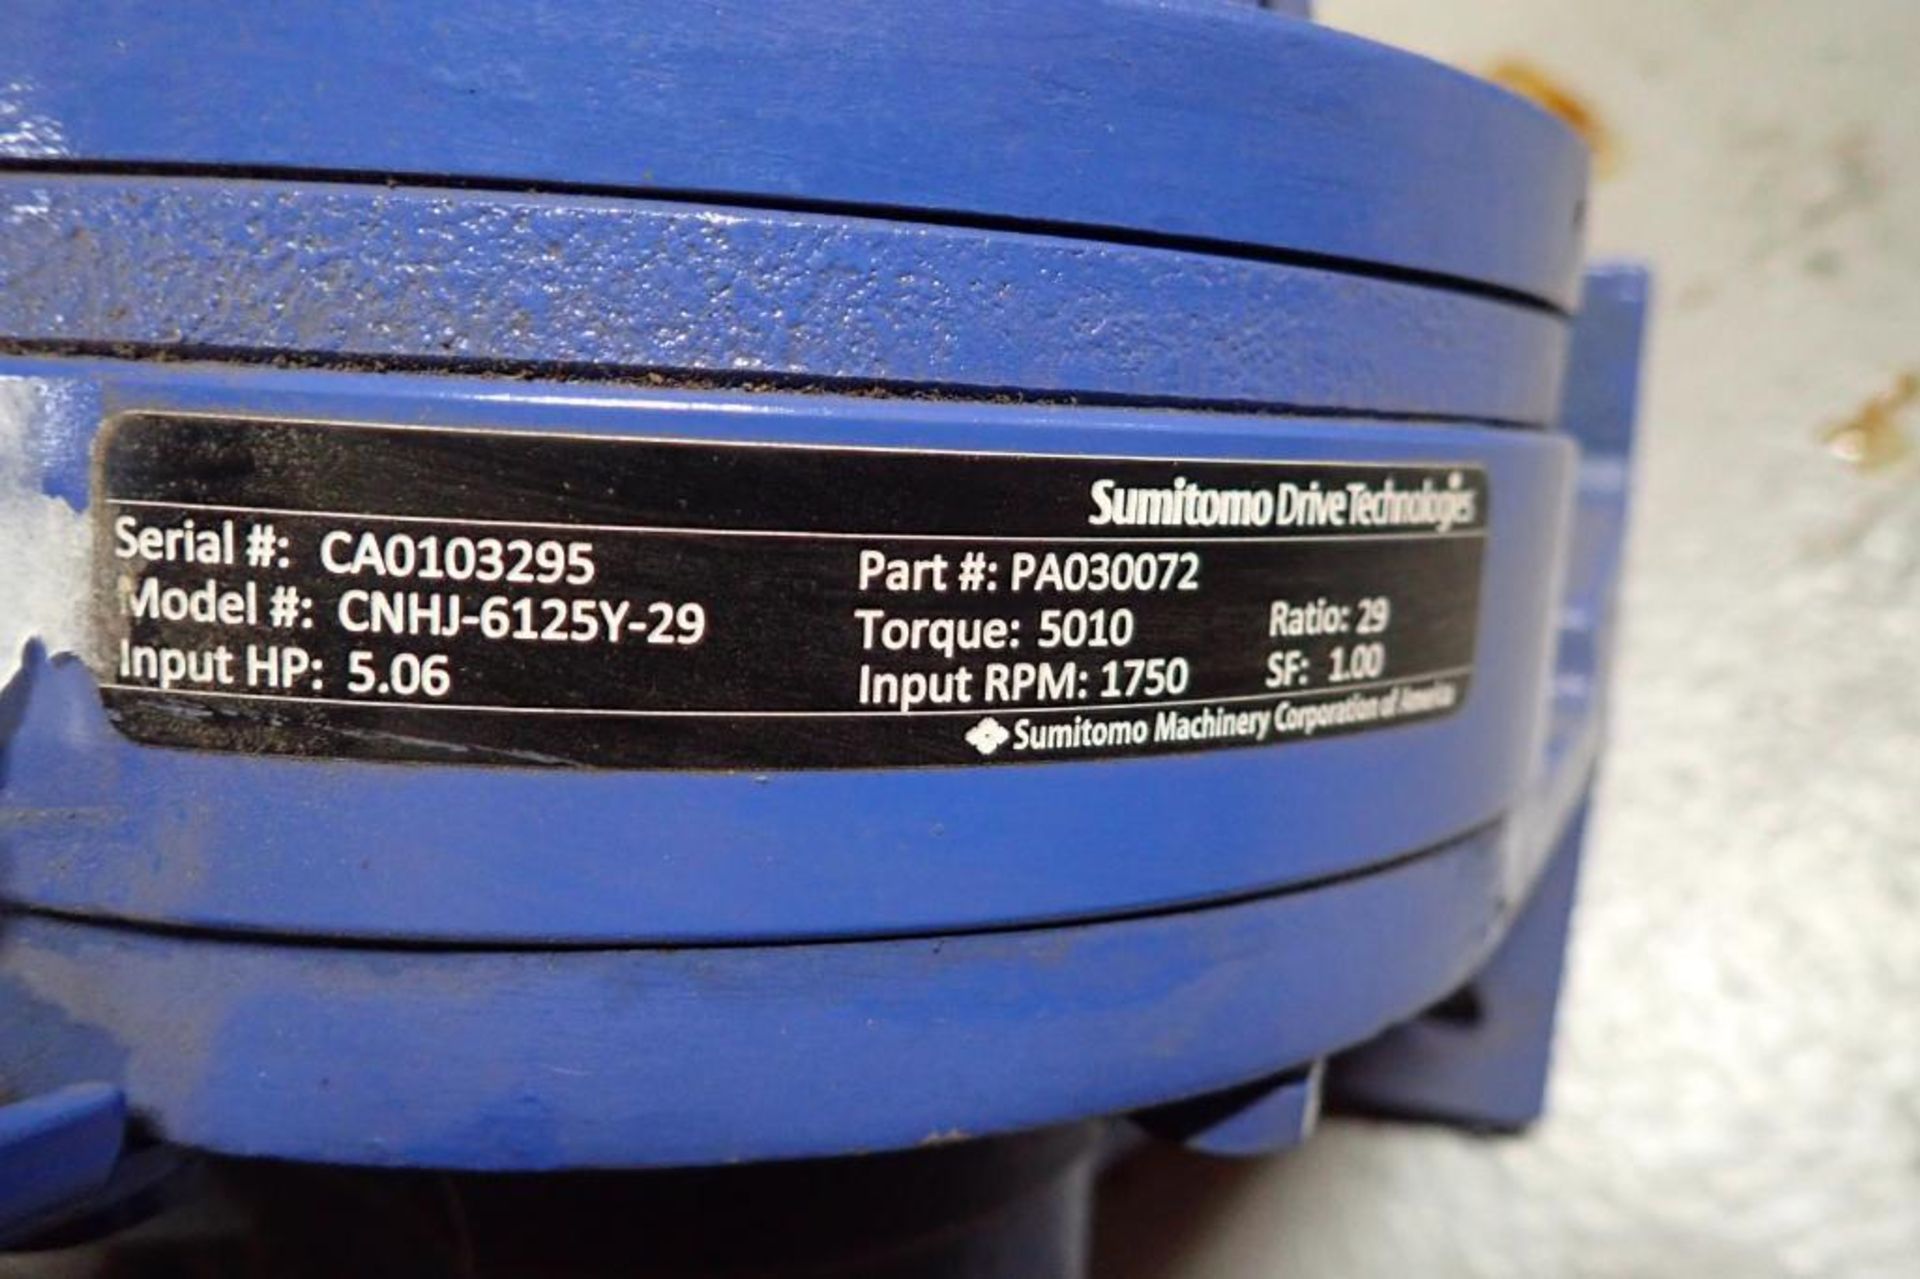 Unused Sumitomo drive, 5.06 hp input, 1750 rpm, ratio 29, toque 5010. **Rigging Fee: $25** - Image 5 of 5